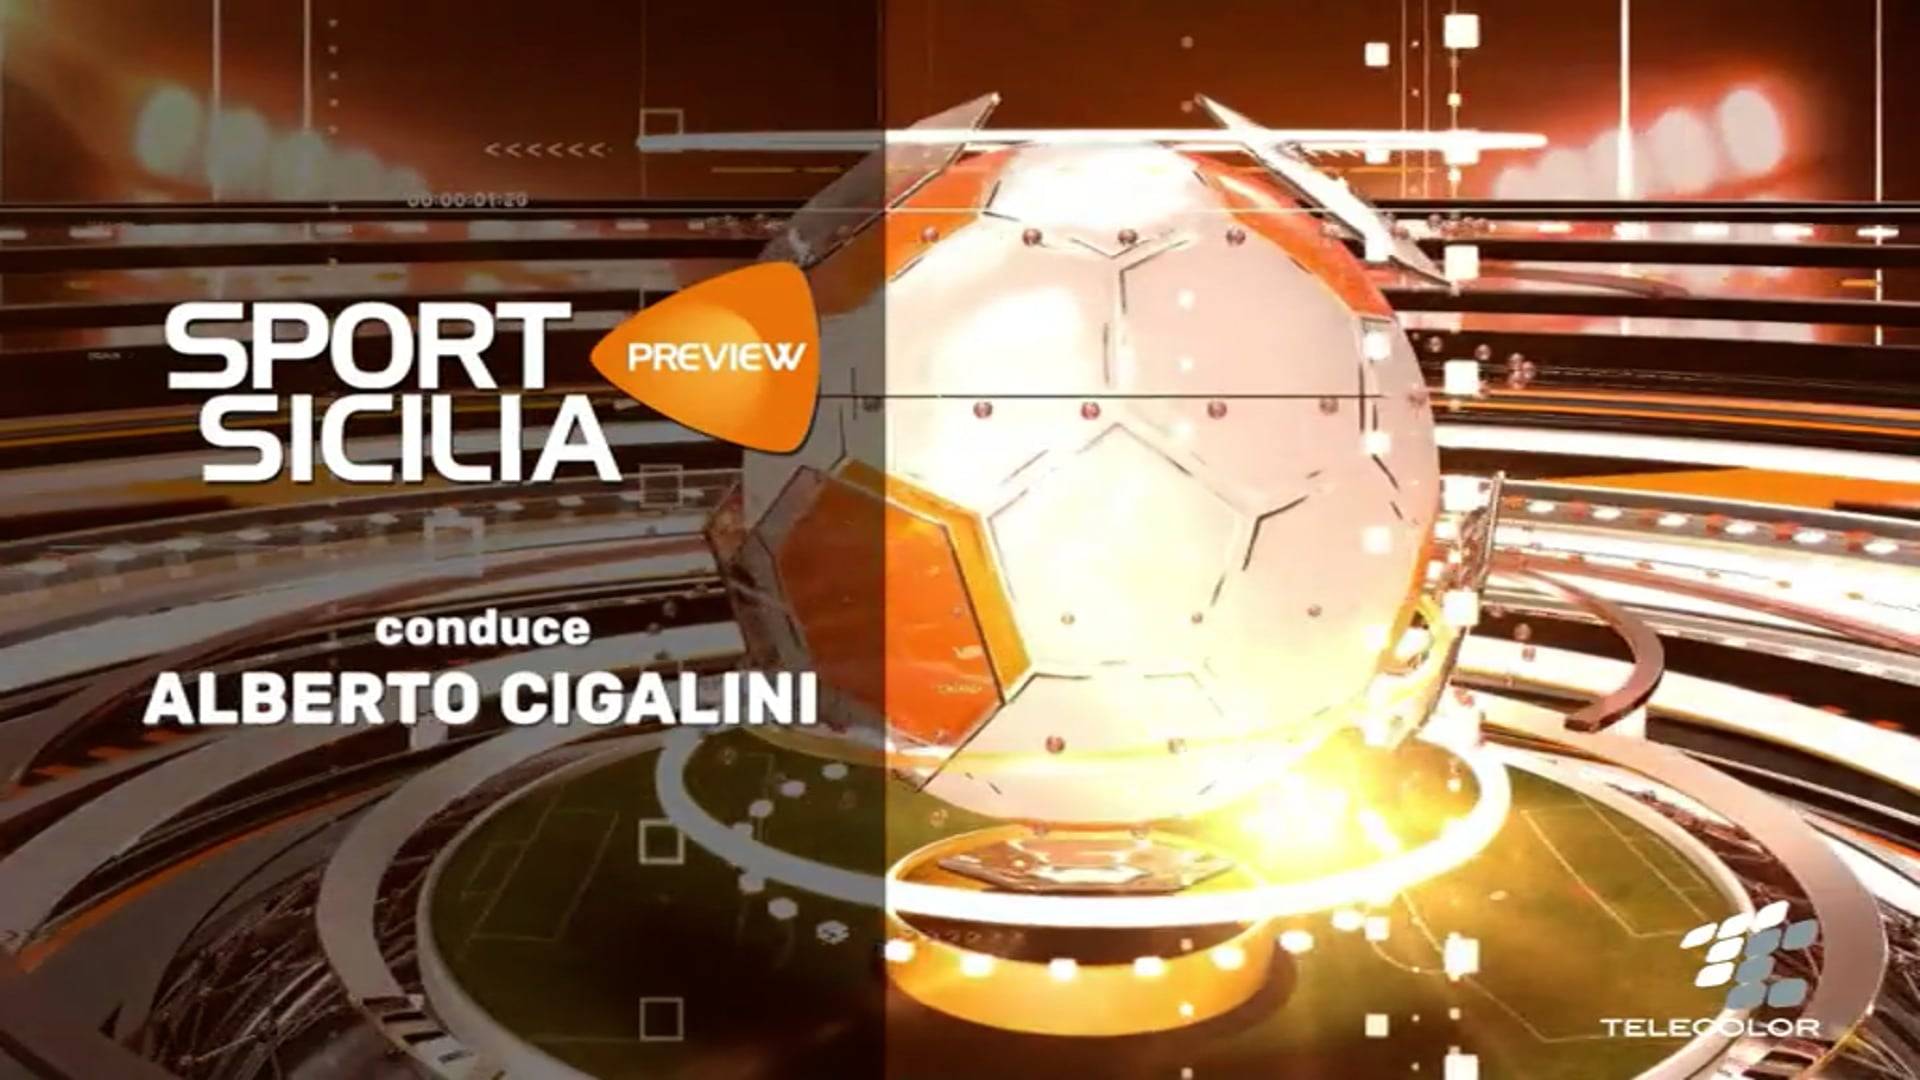 sport-sicilia-preview-15-ottobre-2021-vimeo-thumbnail.jpg